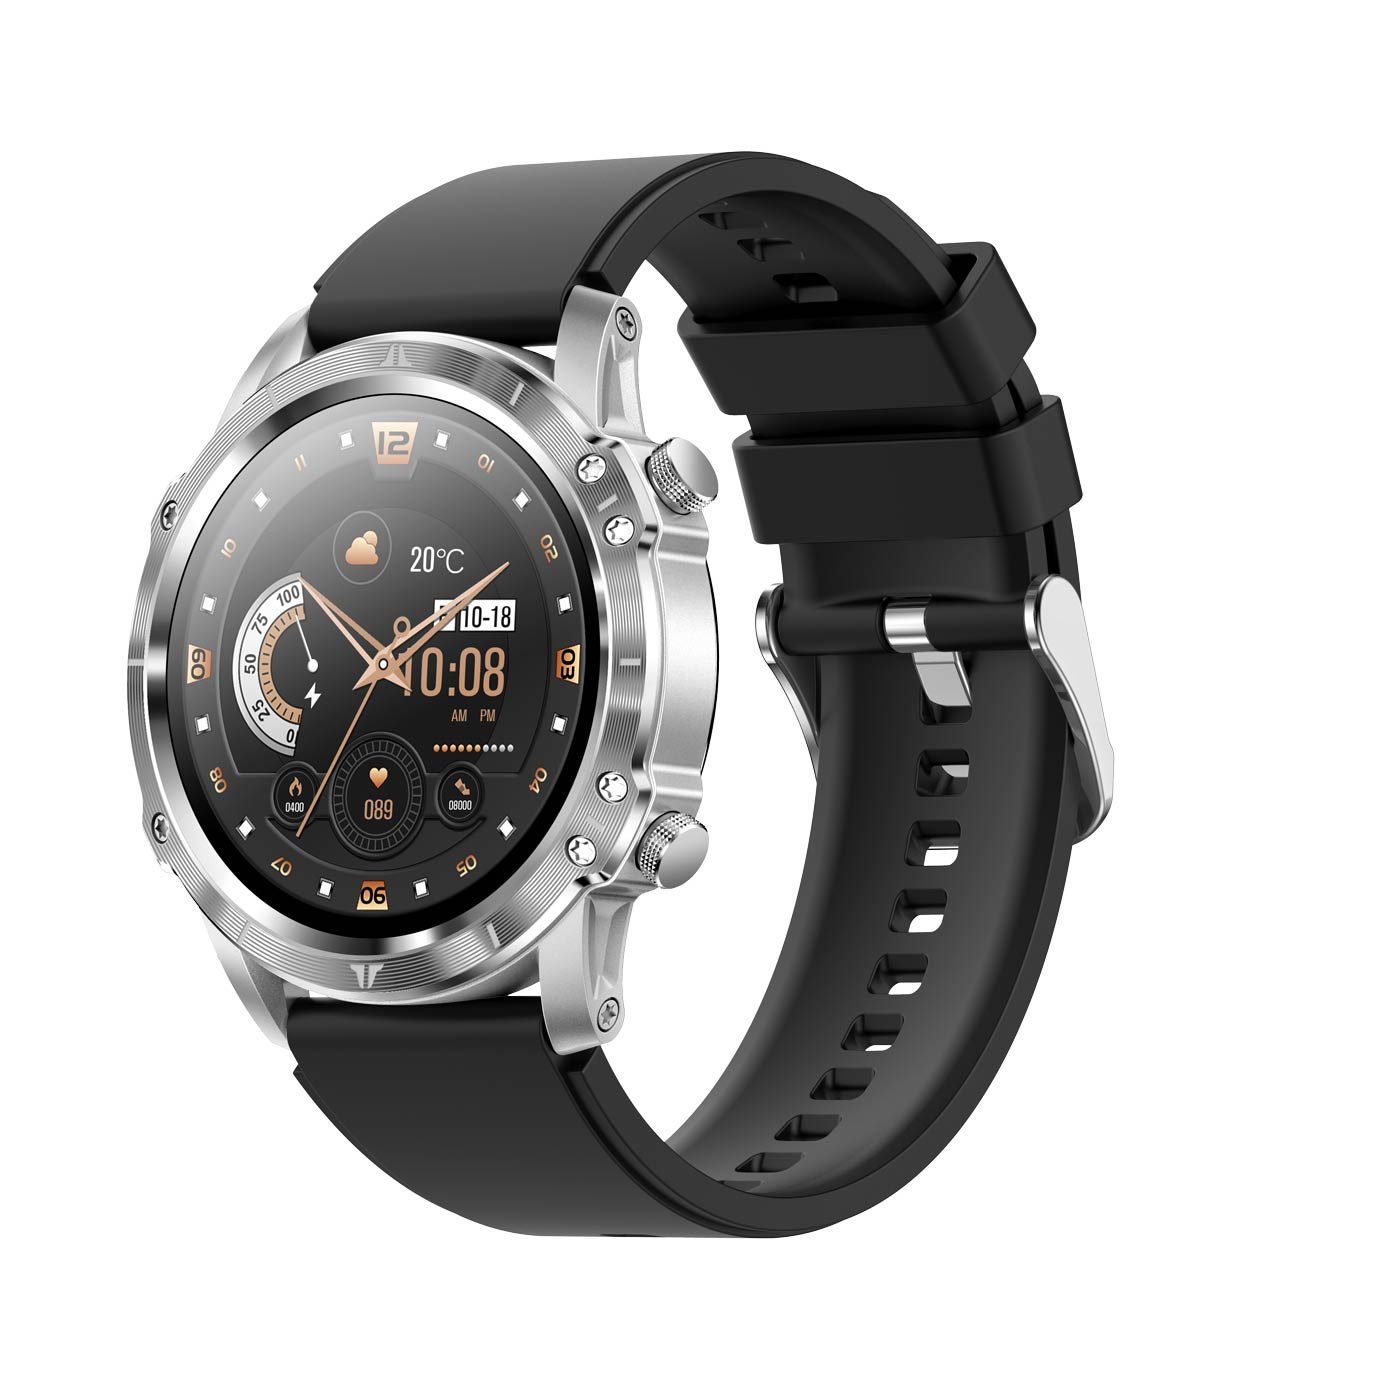 silber, silbern CARNEO Adventure HR+ Smartwatch,